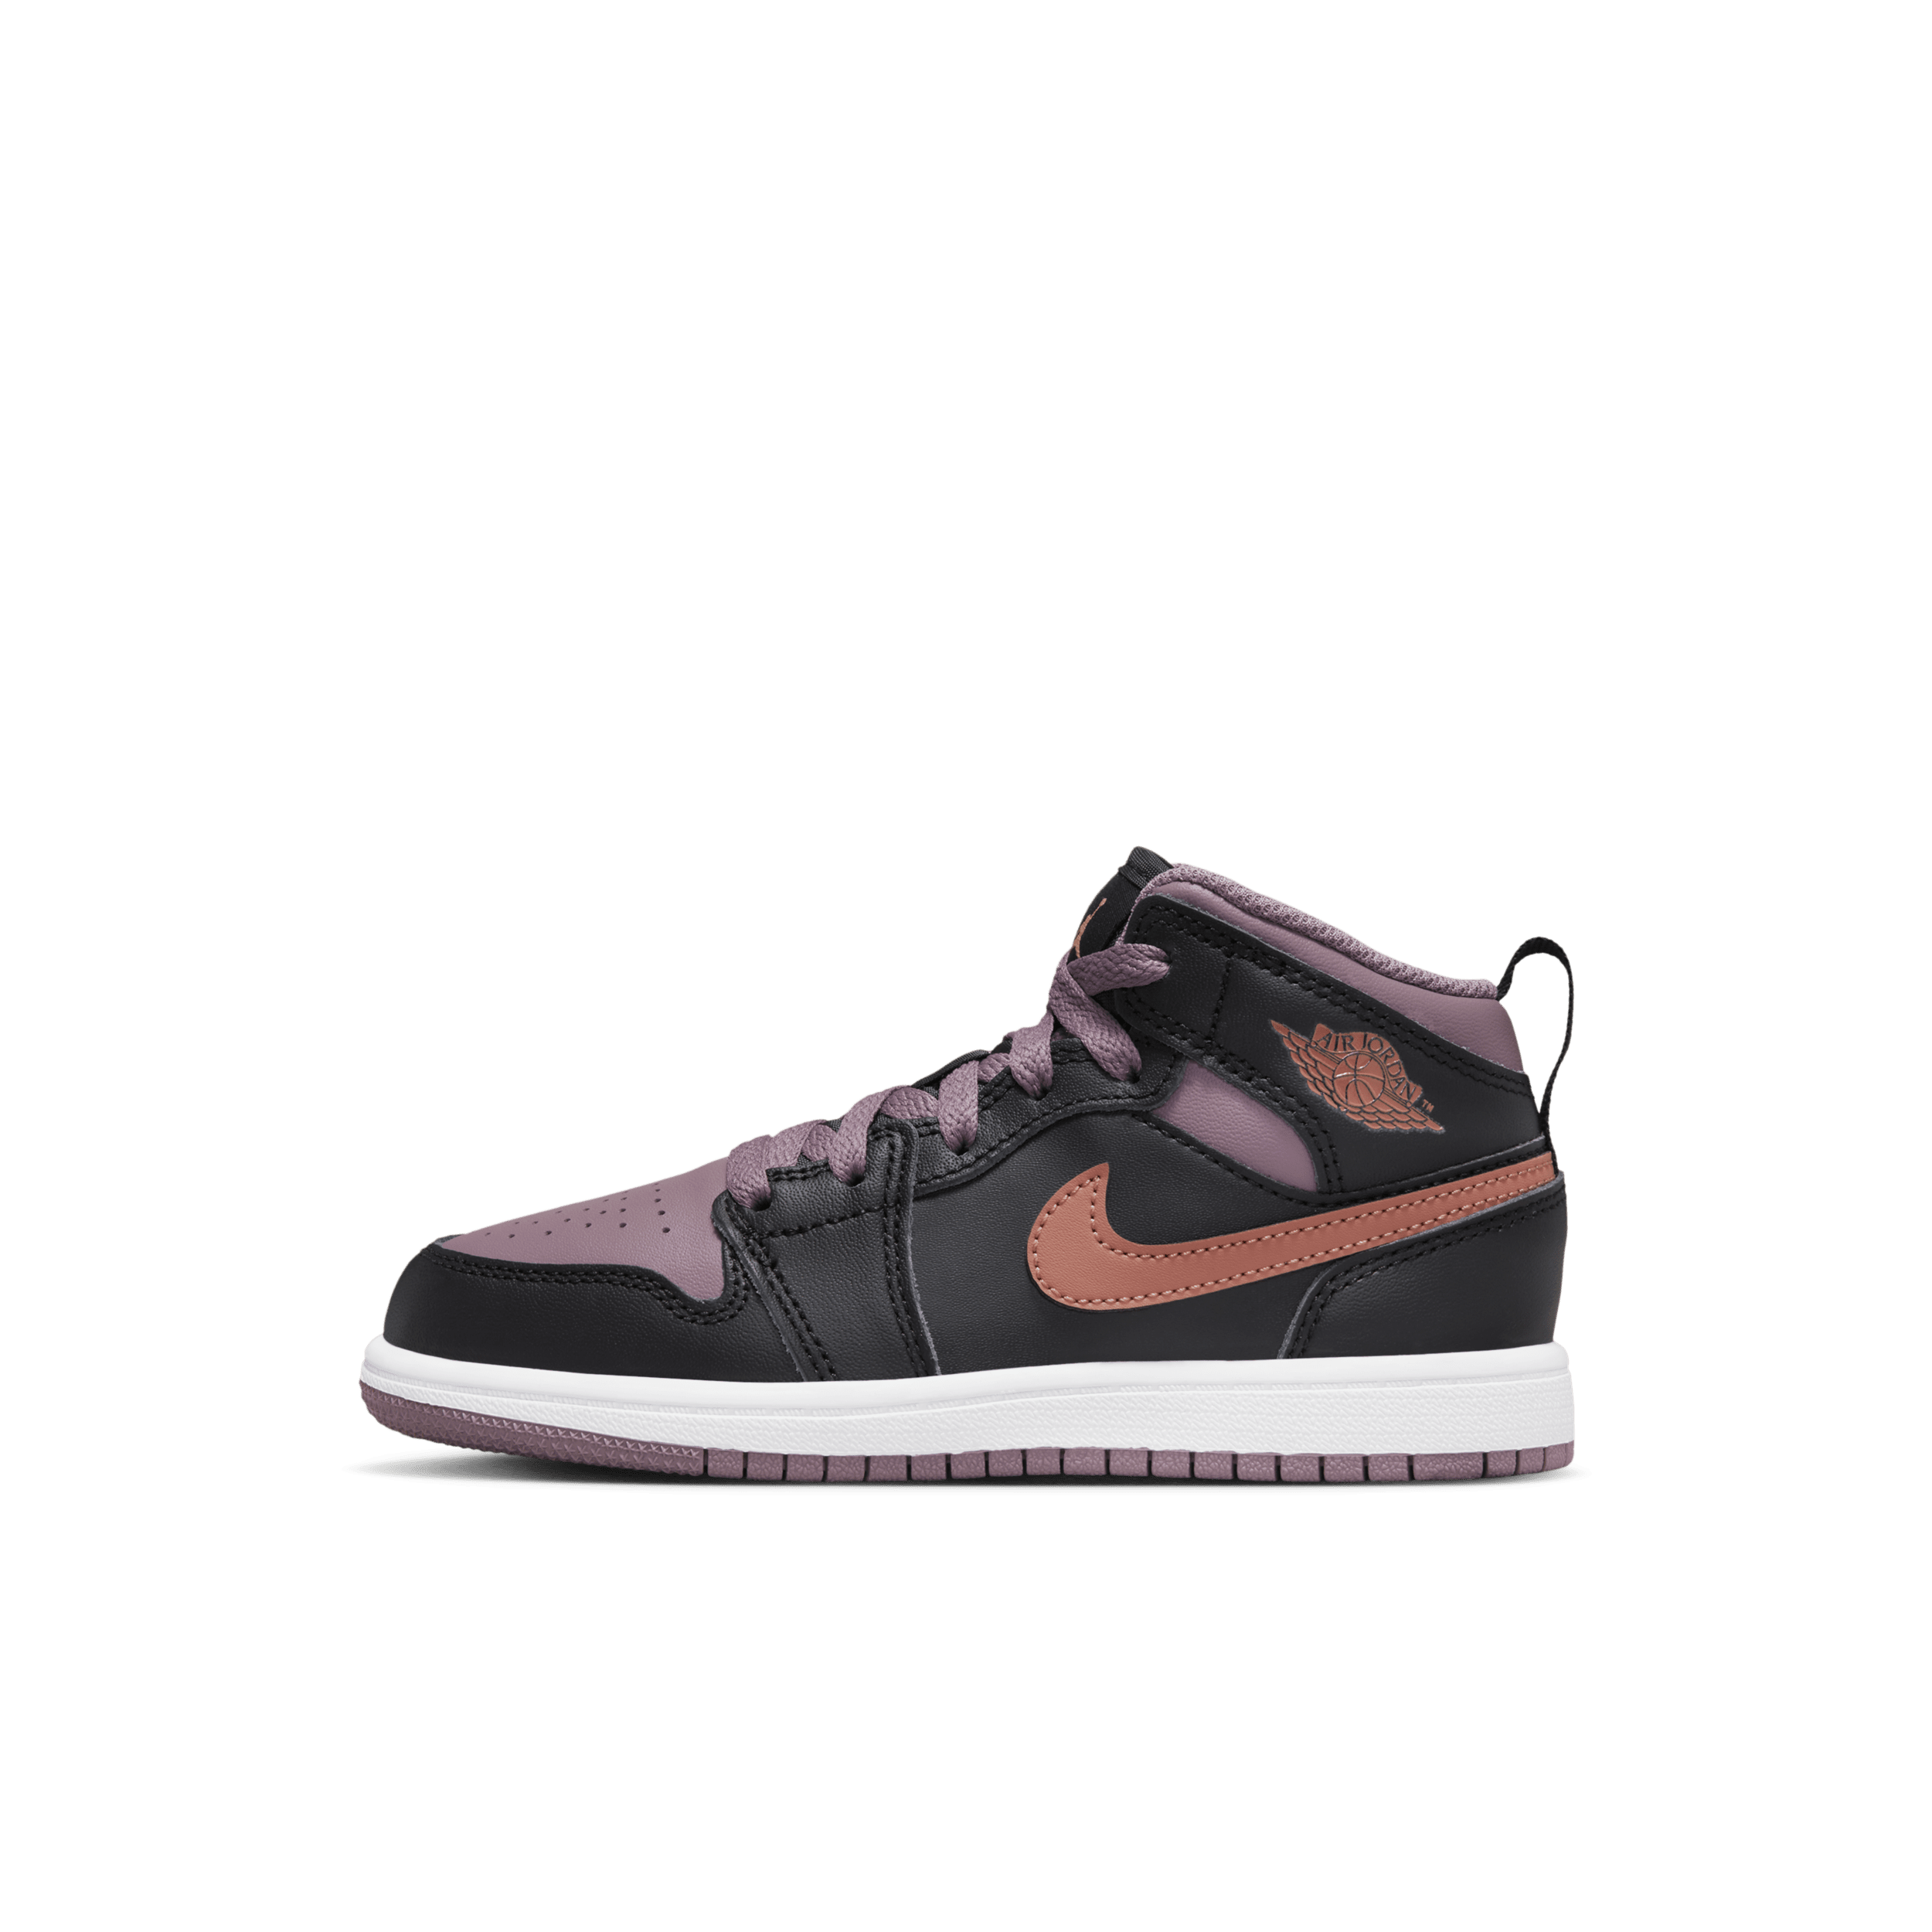 Jordan 1 Mid SE-sko til mindre børn - sort